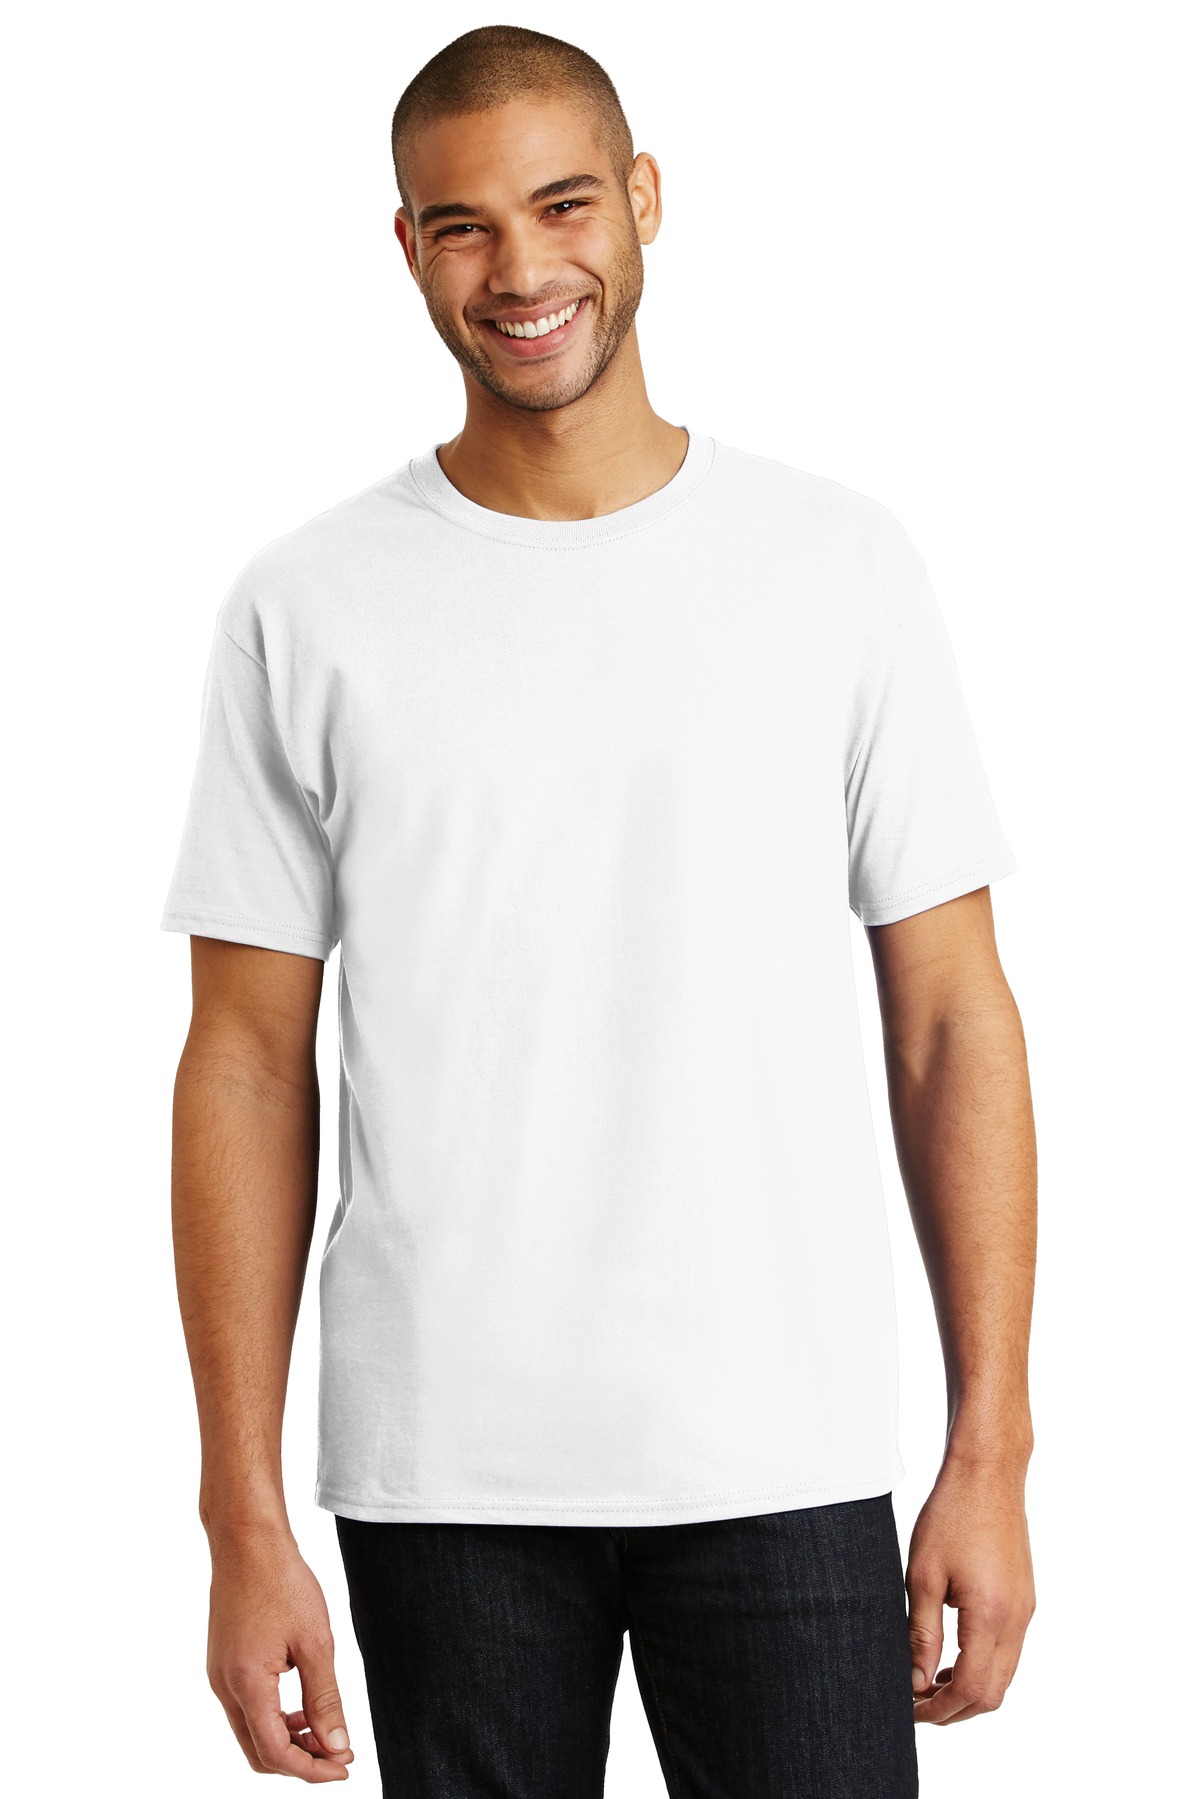 Hanes - Authentic 100% Cotton T-Shirt-Hanes